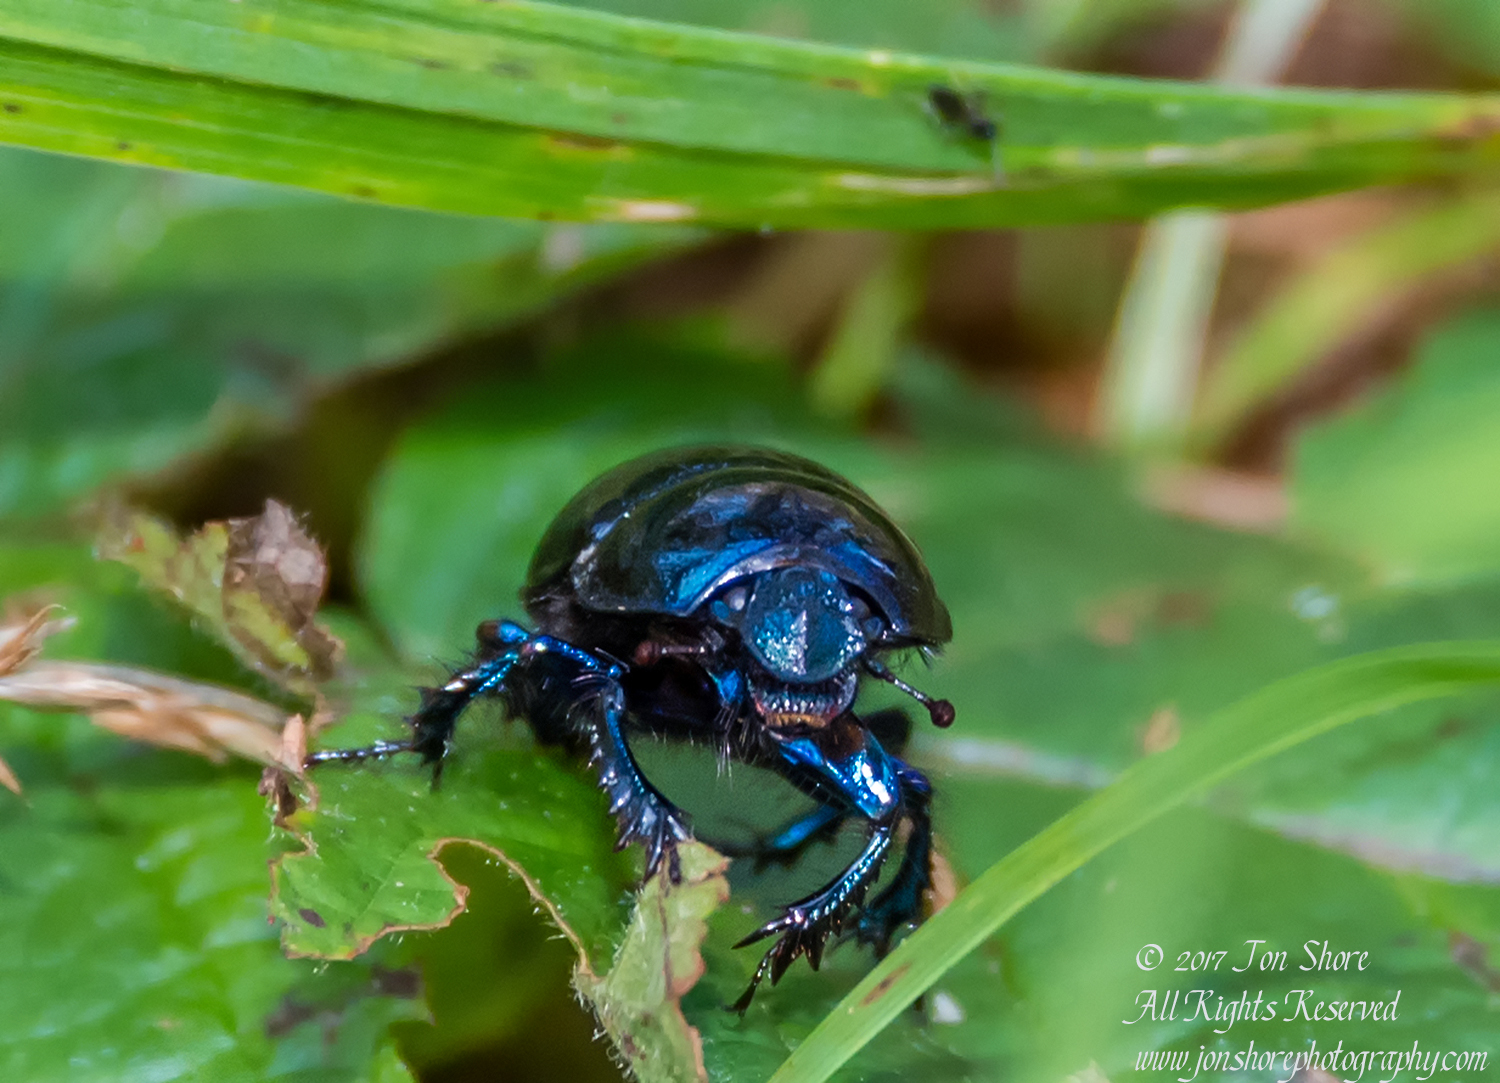 Black Beetle Macro Latvia September 2017 by Jon Shore